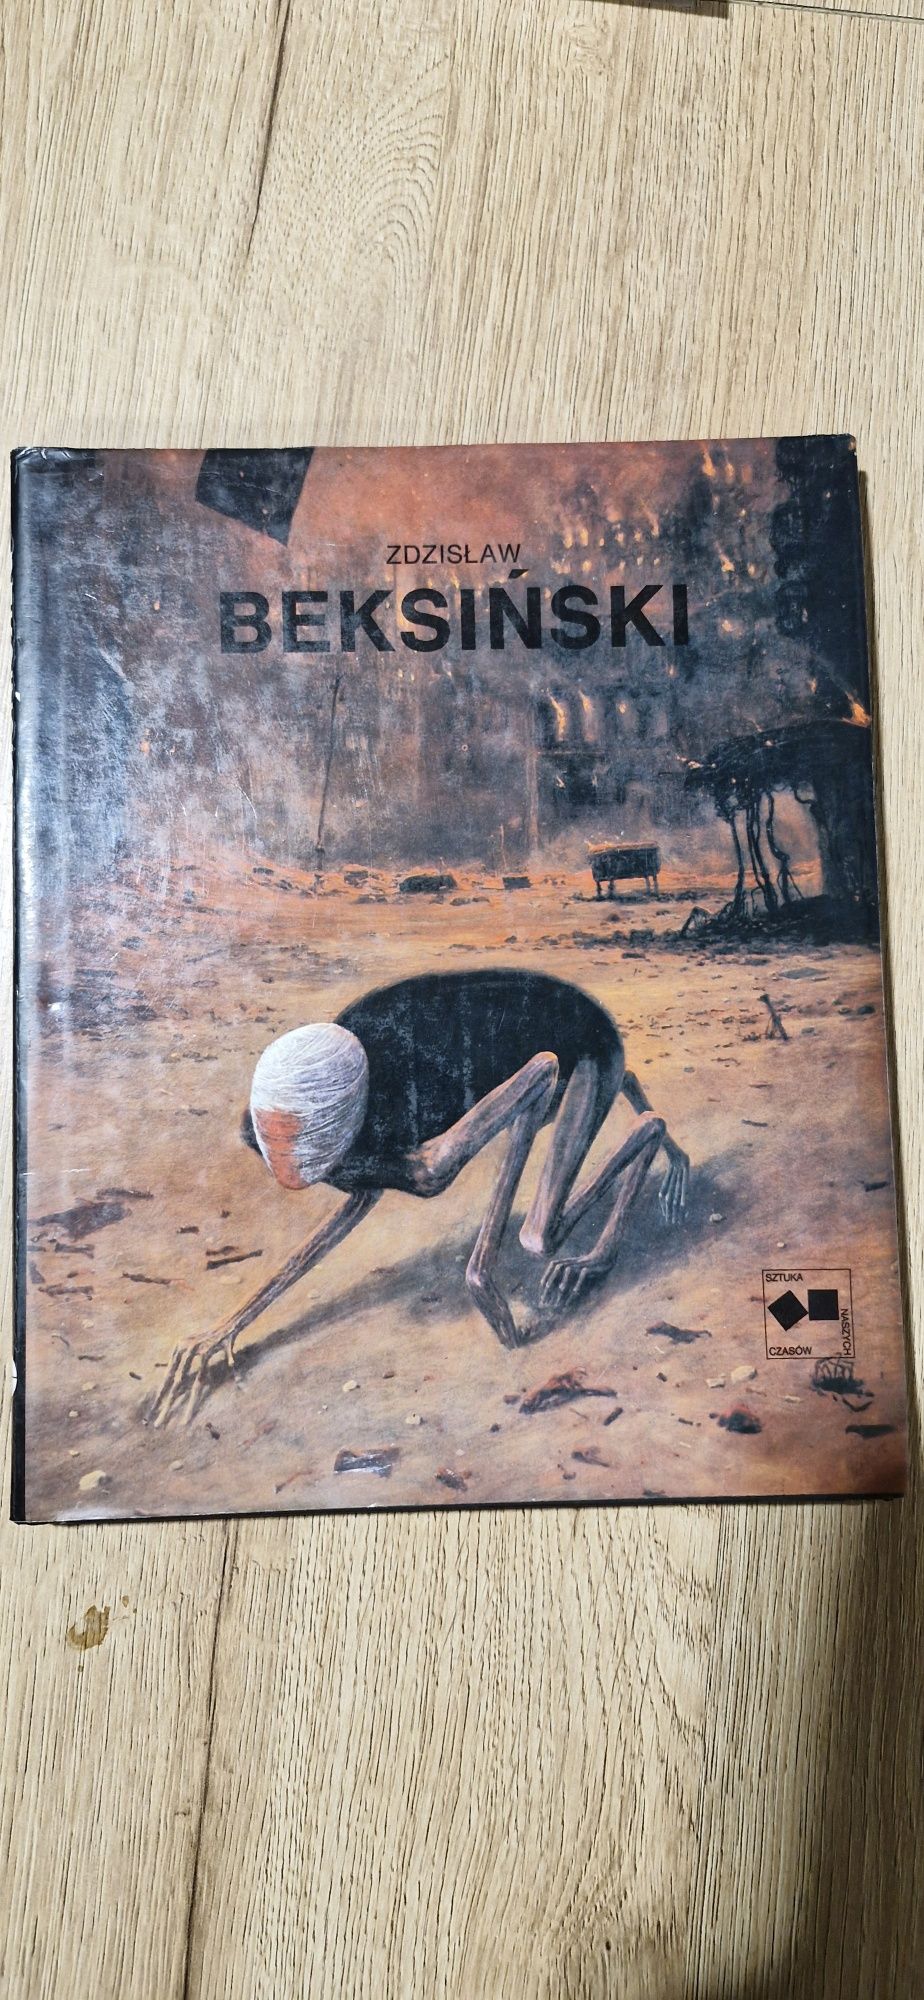 Unikatowy album Zdzisław Beksiński 1989r